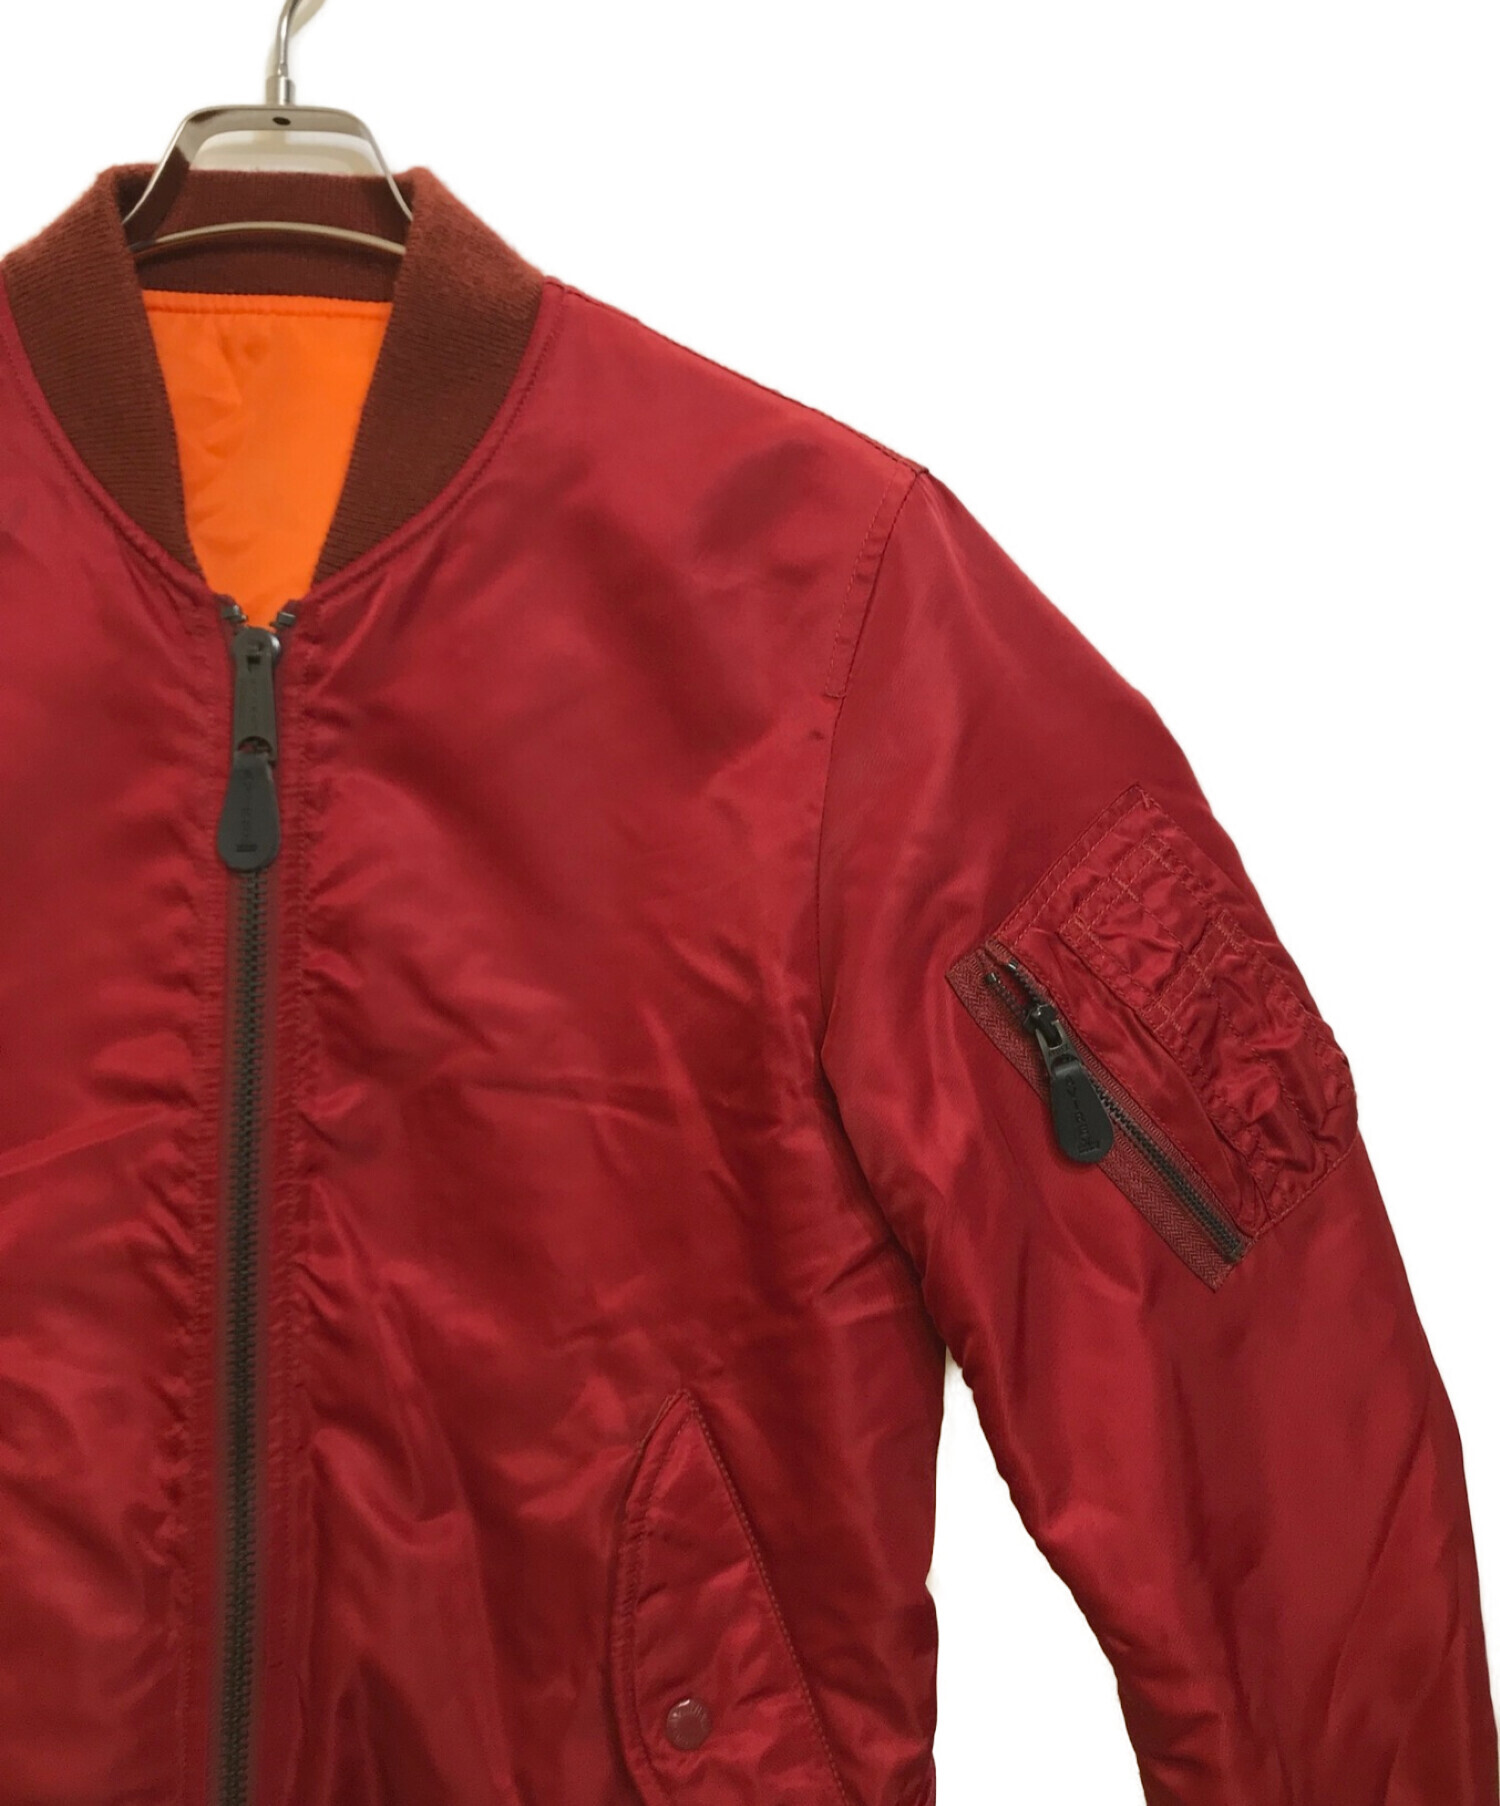 AVIREX (アヴィレックス) リバーシブルMA-1ジャケット レッド×オレンジ サイズ:M